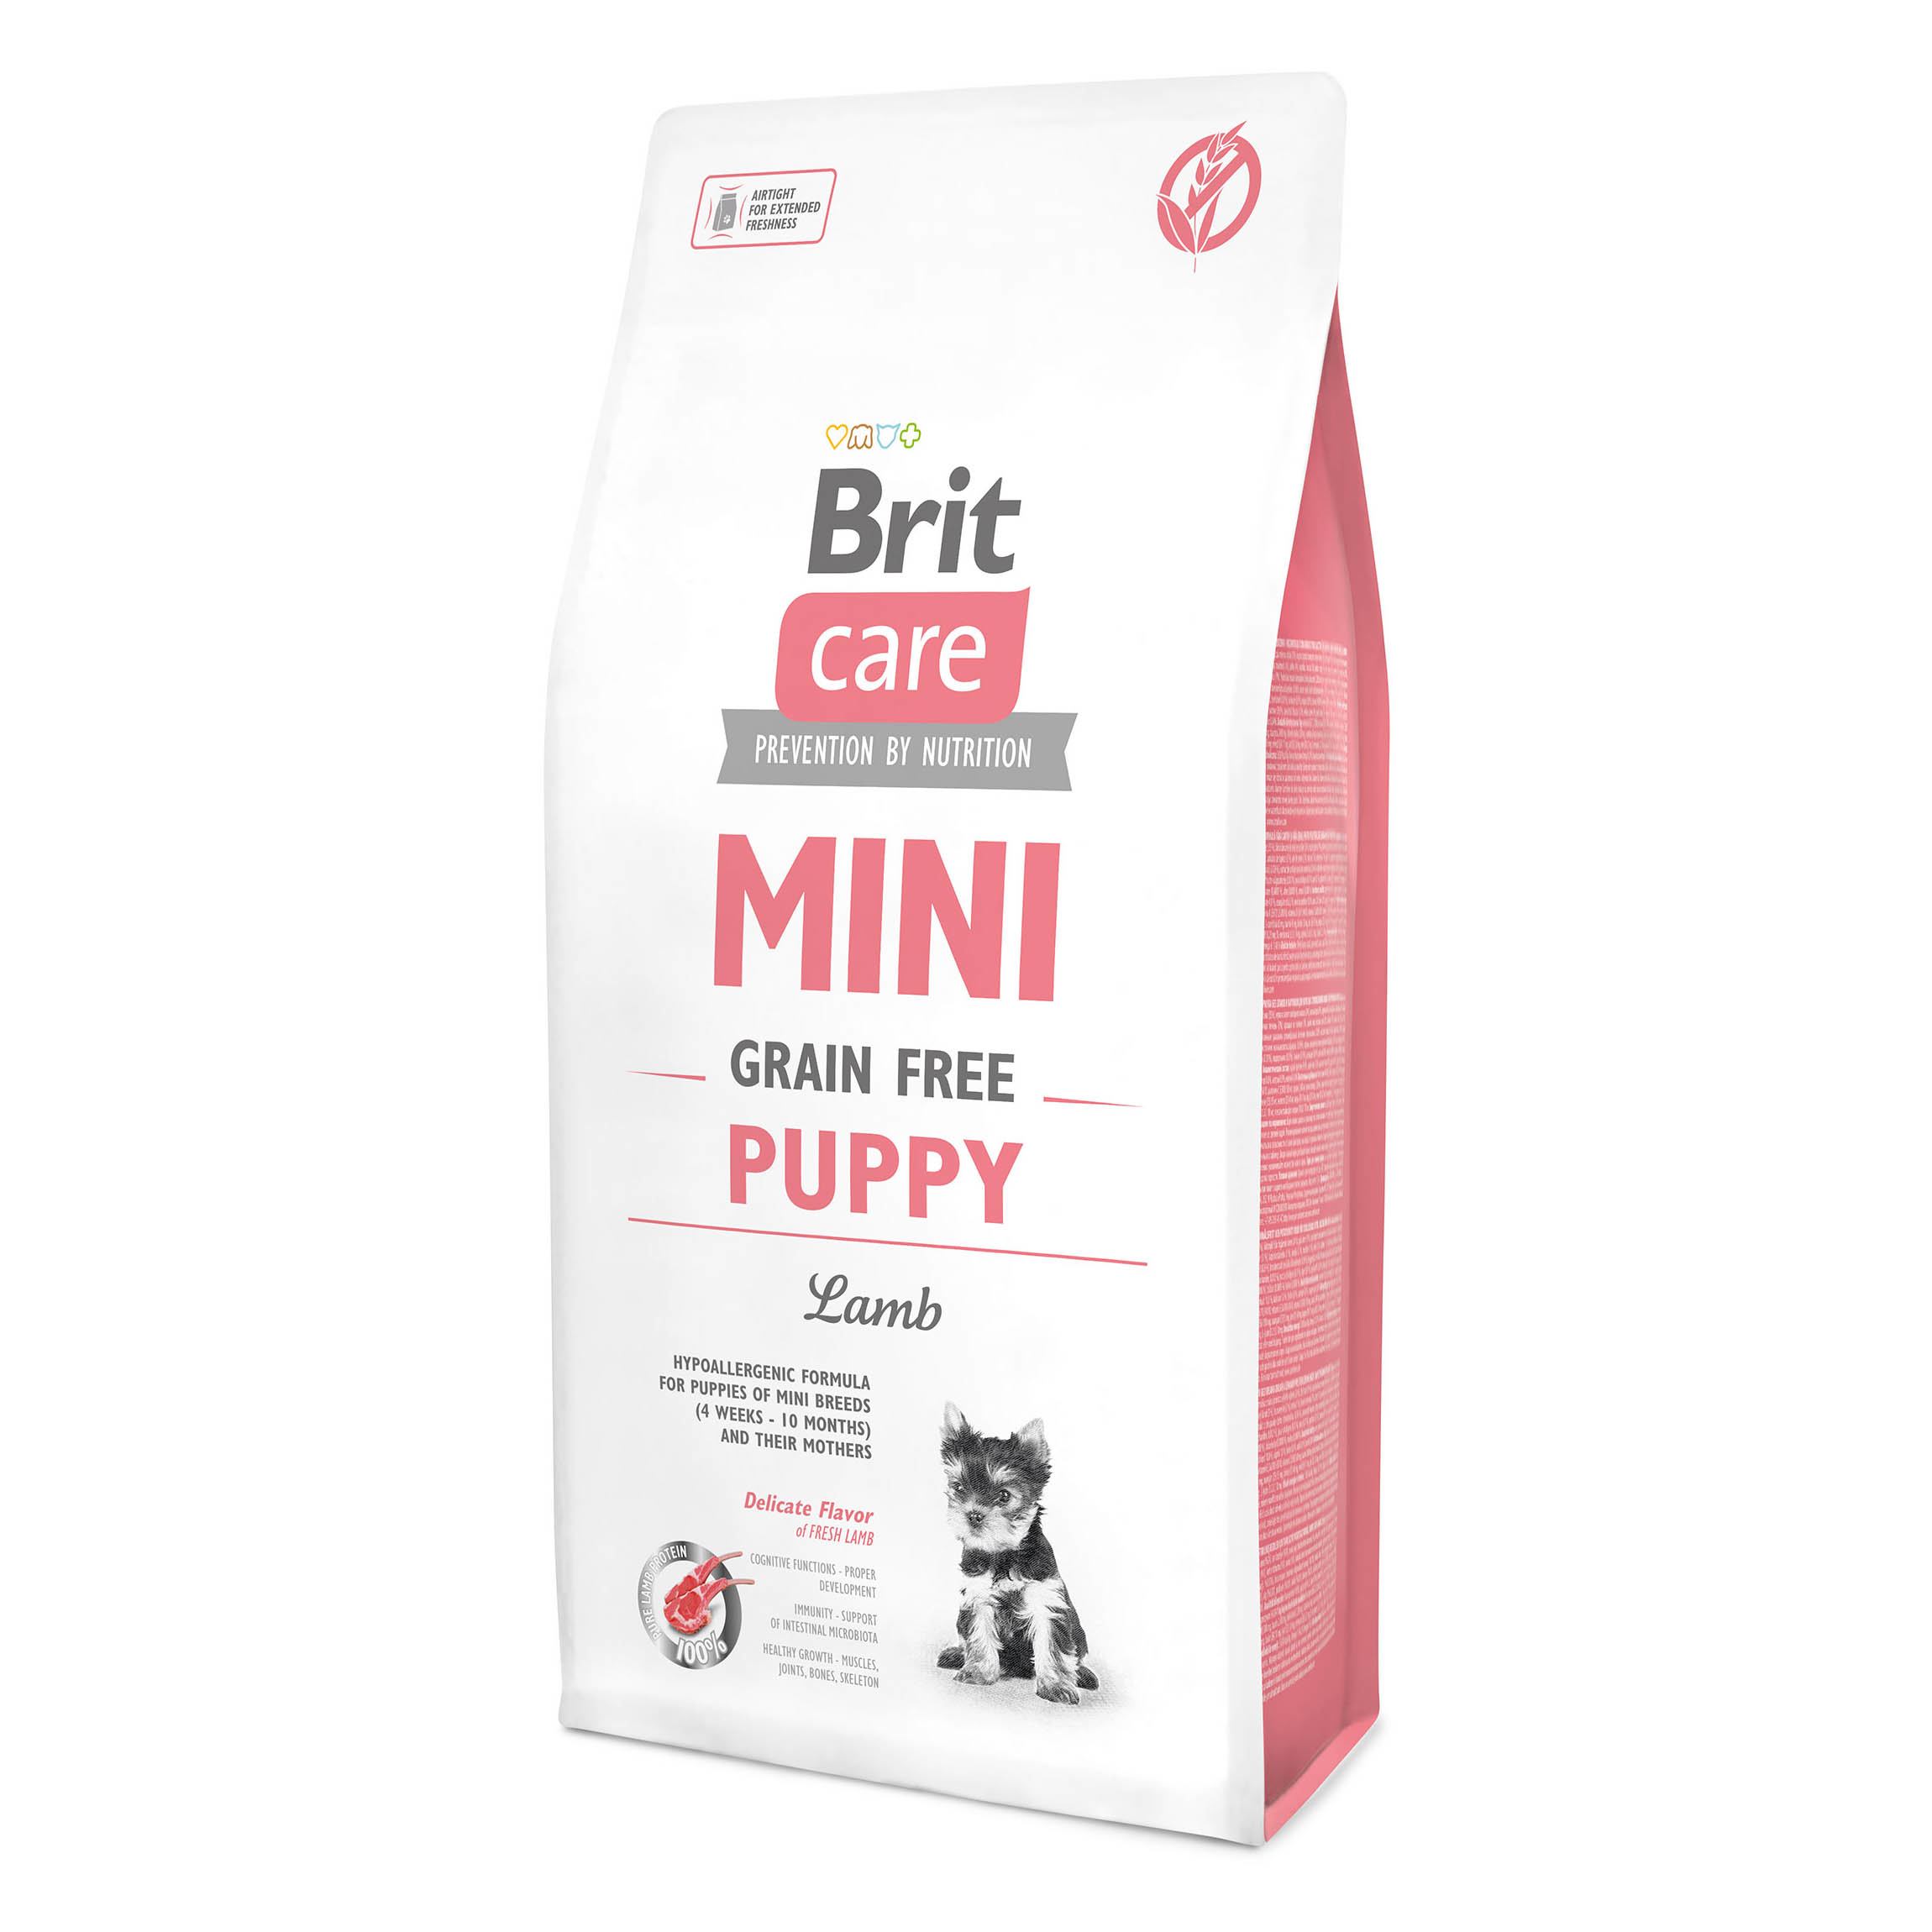 Беззерновой сухой корм для щенков миниатюрных пород Brit Care GF Mini Puppy Lamb, с ягненком, 7 кг - фото 1